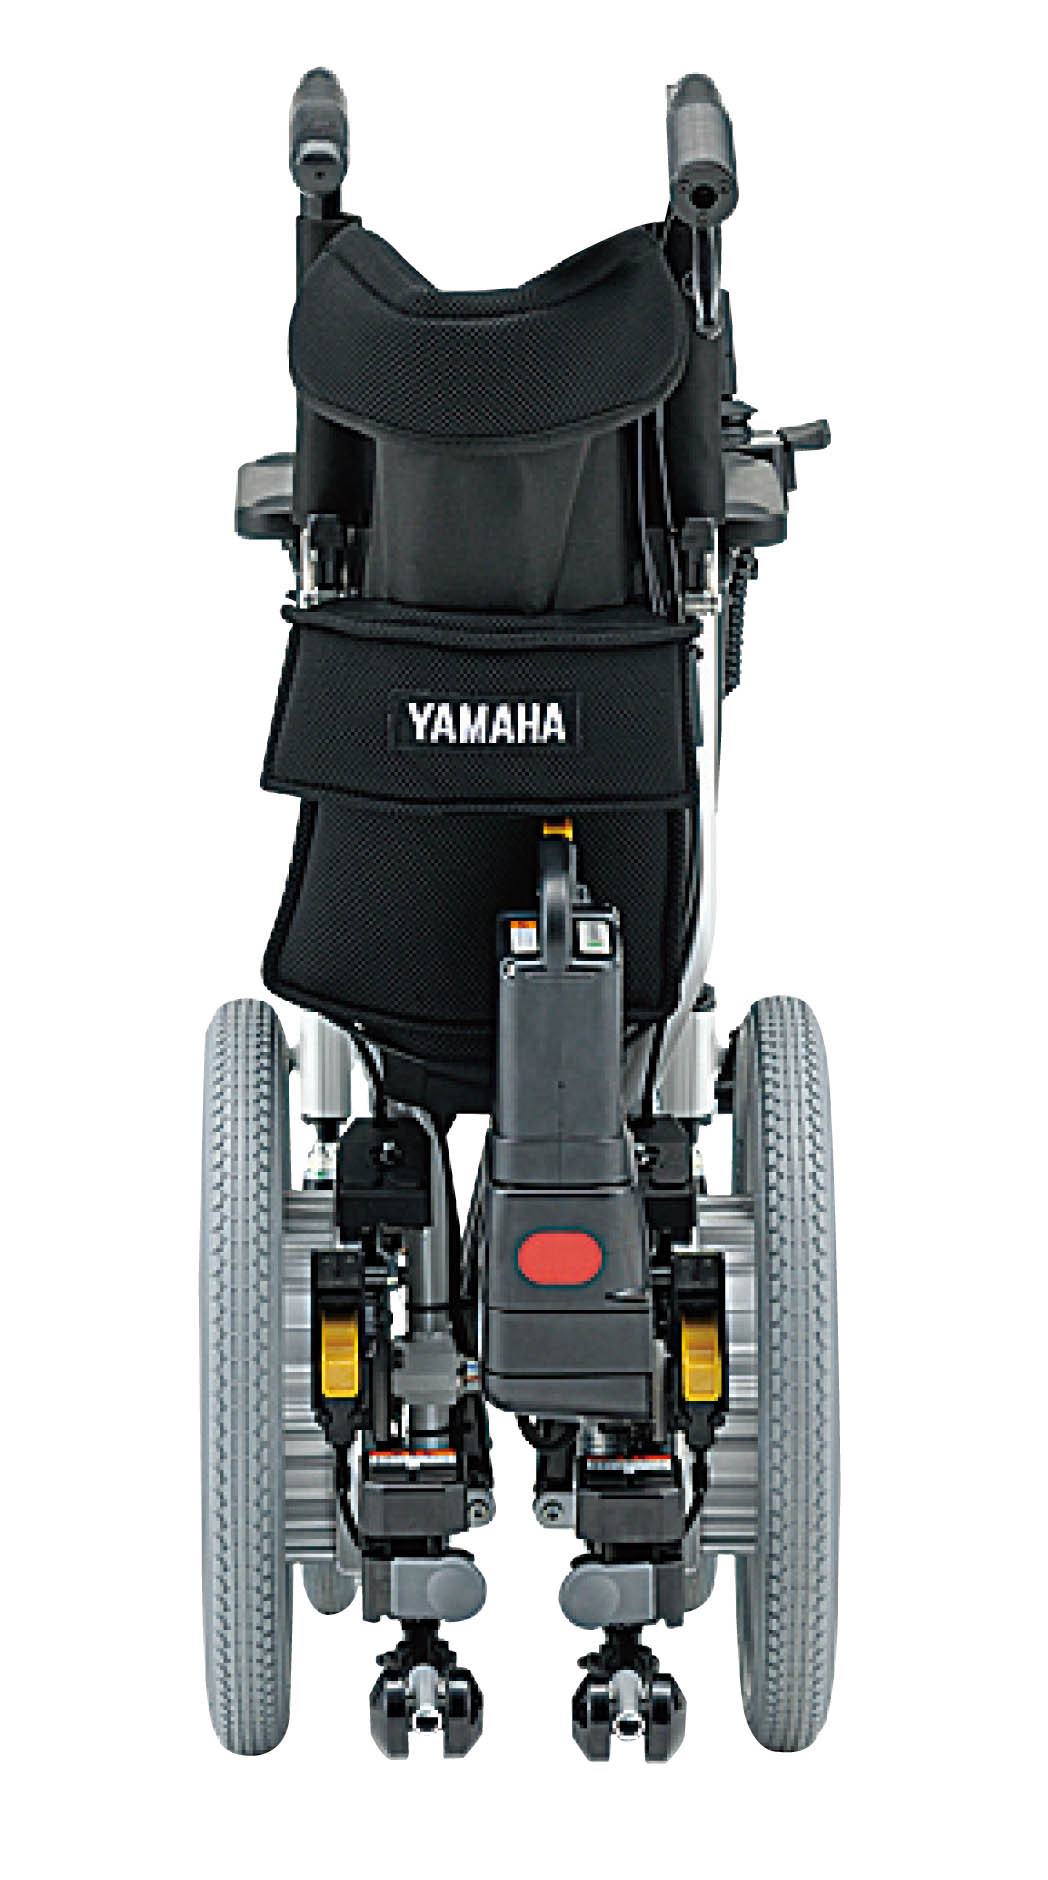 タウニィジョイエックス 車椅子 タウニィジョイX 品 充電器 バッテリー付きサイズを教えてもらえますか